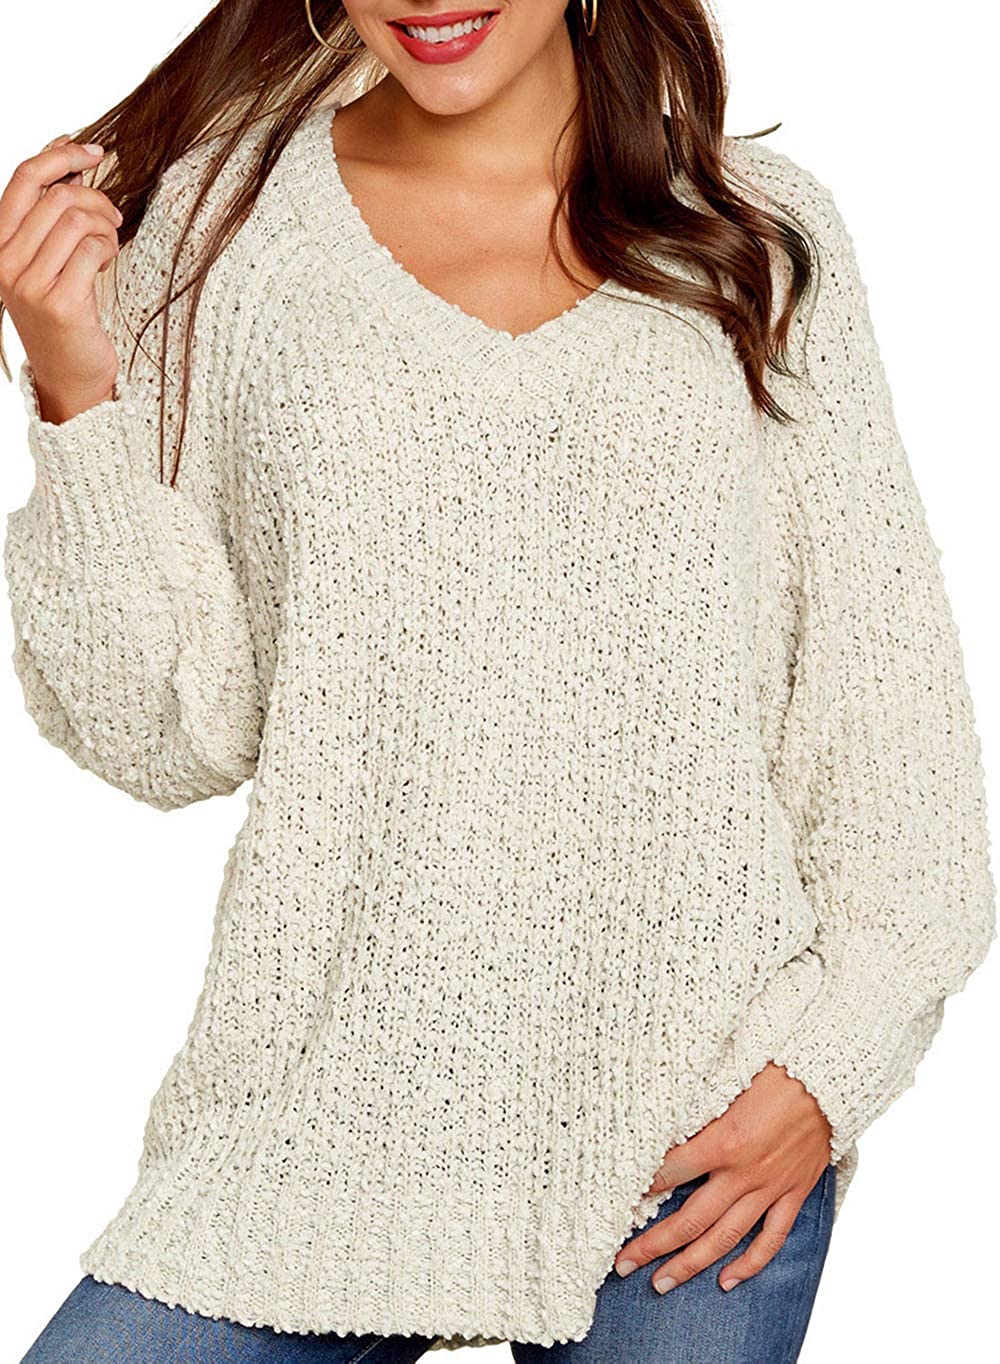 KIRUNDO Women's Winter Fuzzy Popcorn Sweater V Neck Long Sleeves Loose Fit  Sweat | eBay